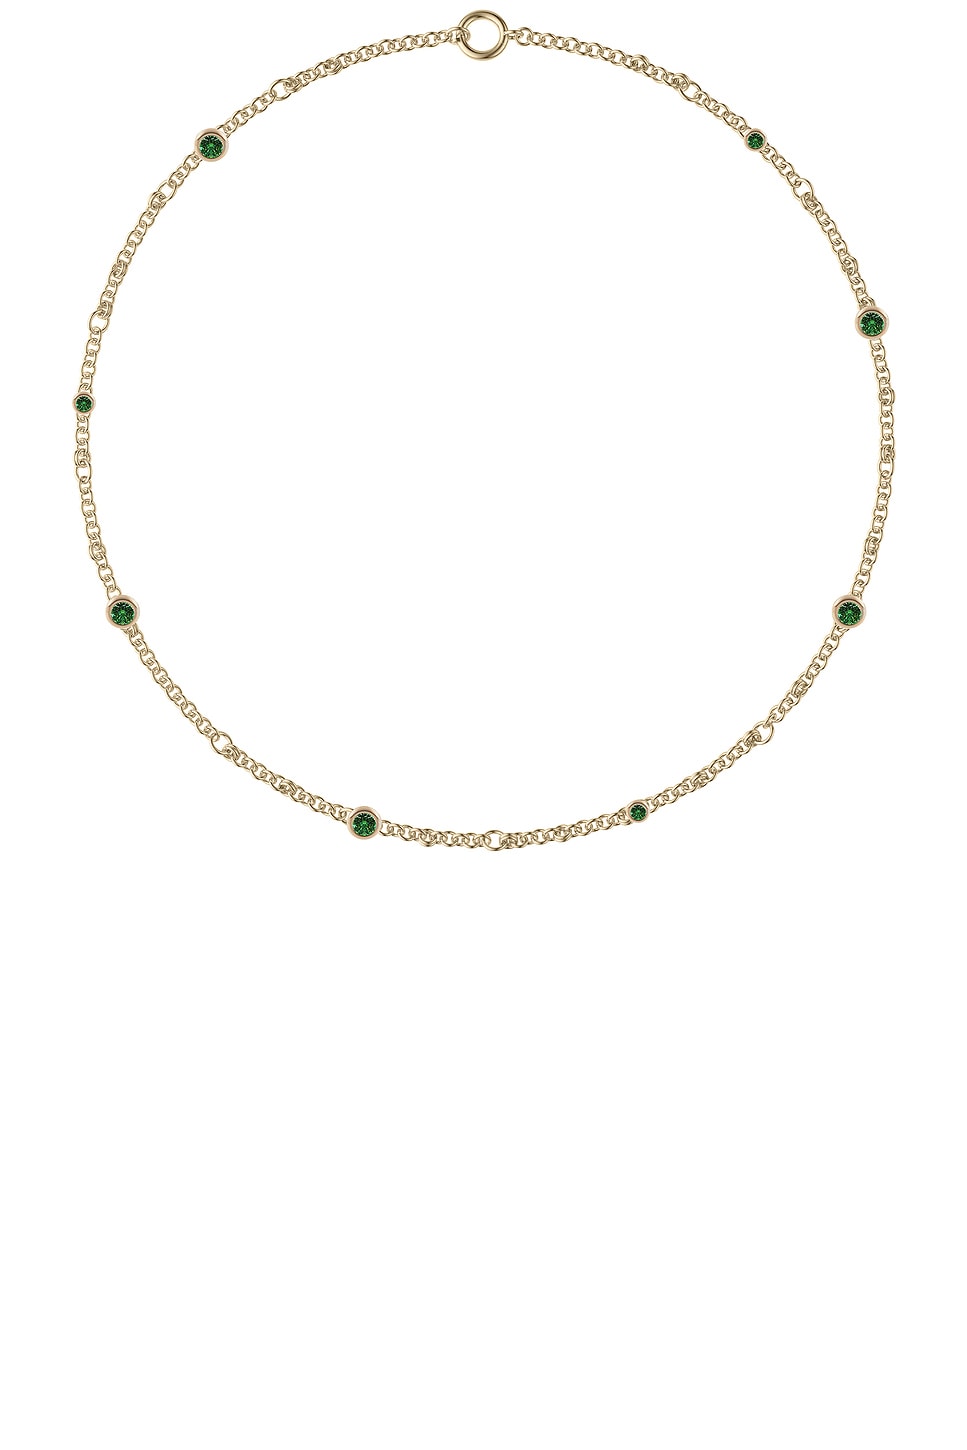 Image 1 of Spinelli Kilcollin Gravity Estrella Emerald Necklace in 18k Yellow Gold & Emerald